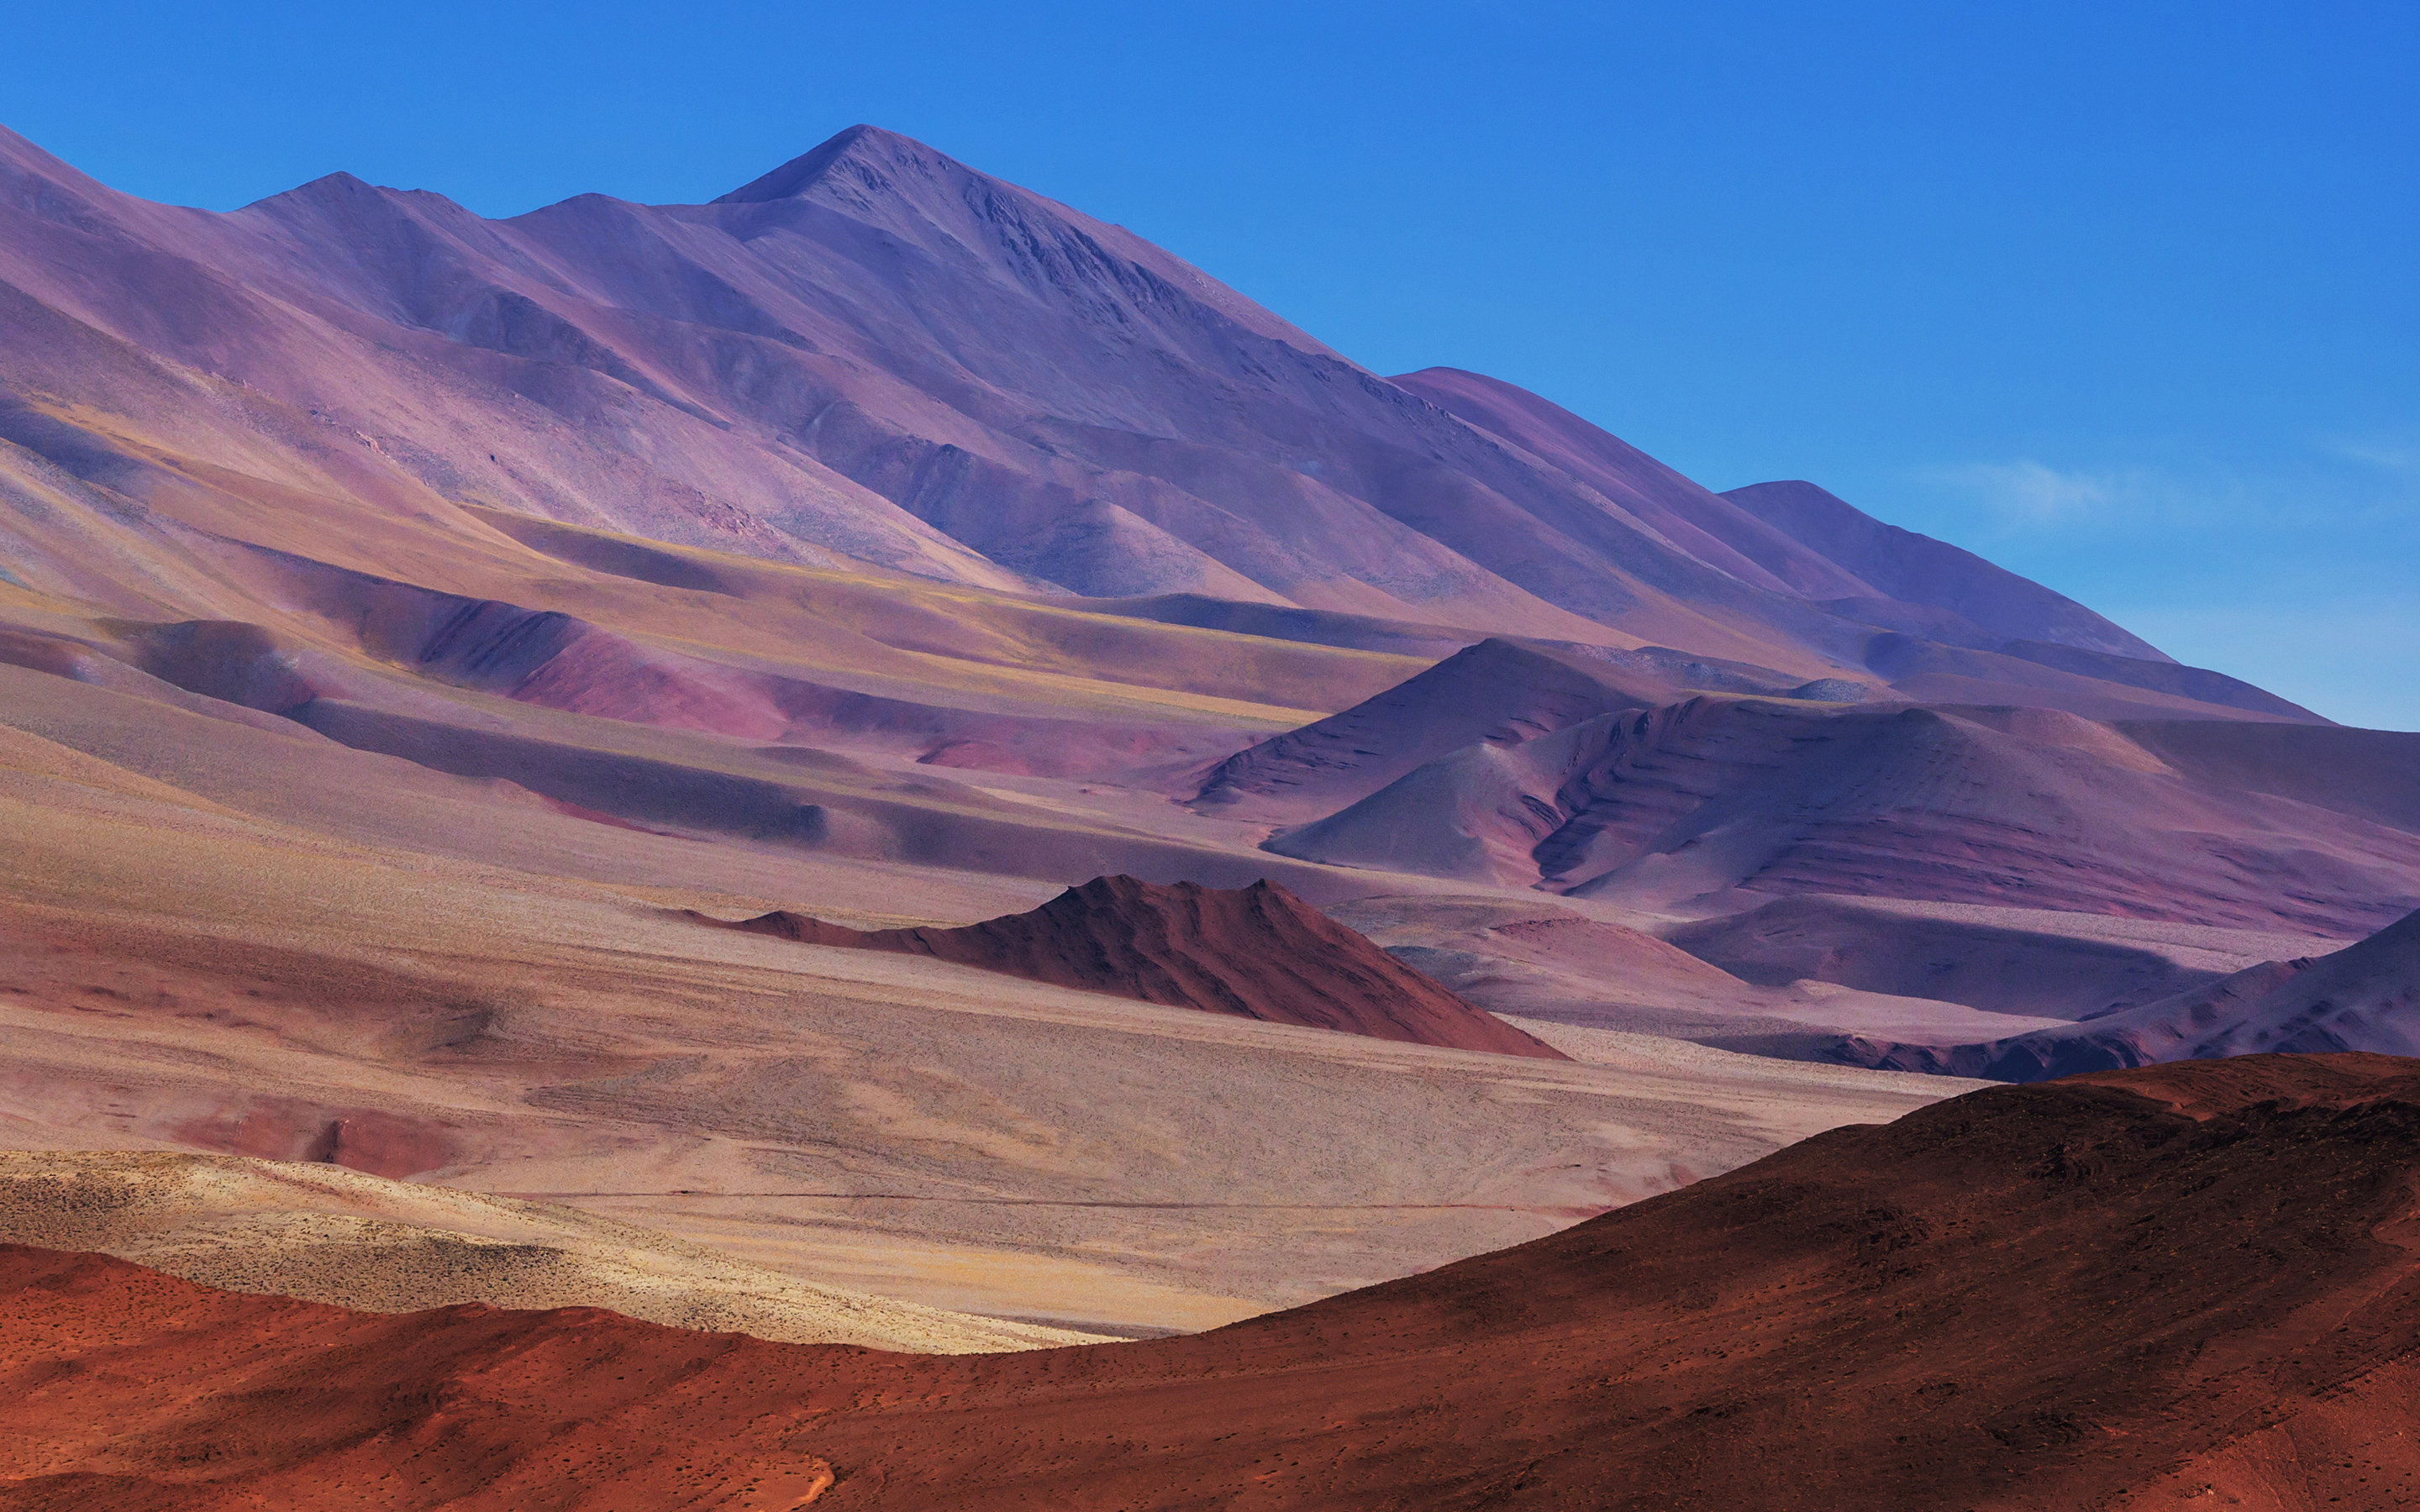 Northern Argentina Desert613289530 - Northern Argentina Desert - Northern, Desert, Argentina, After